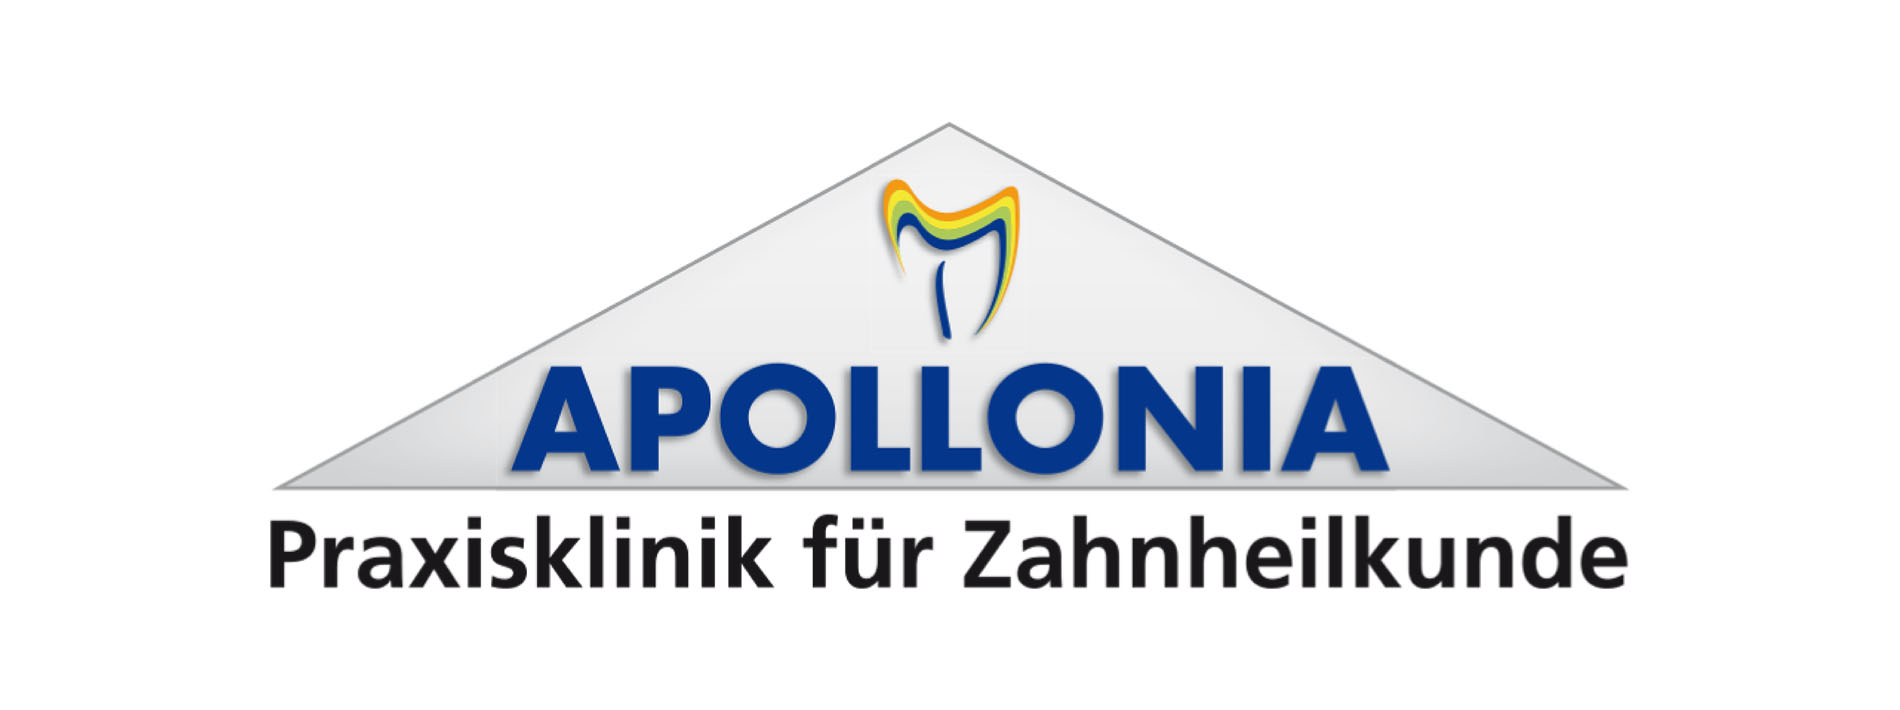 Auszeichnung für die Apollonia!